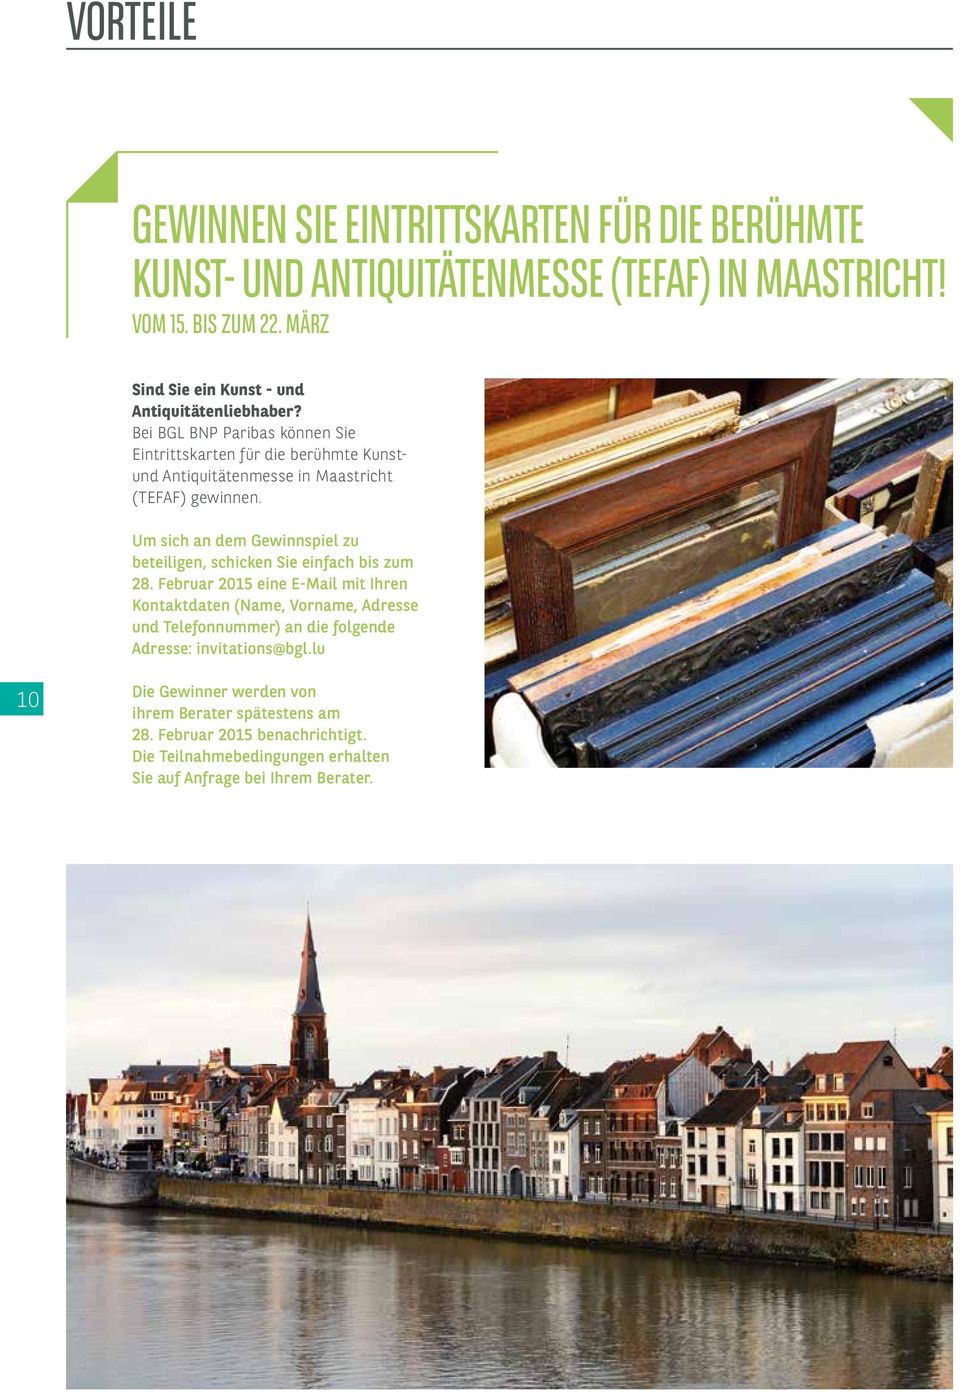 Bei BGL BNP Paribas können Sie Eintrittskarten für die berühmte Kunstund Antiquitätenmesse in Maastricht (TEFAF) gewinnen.